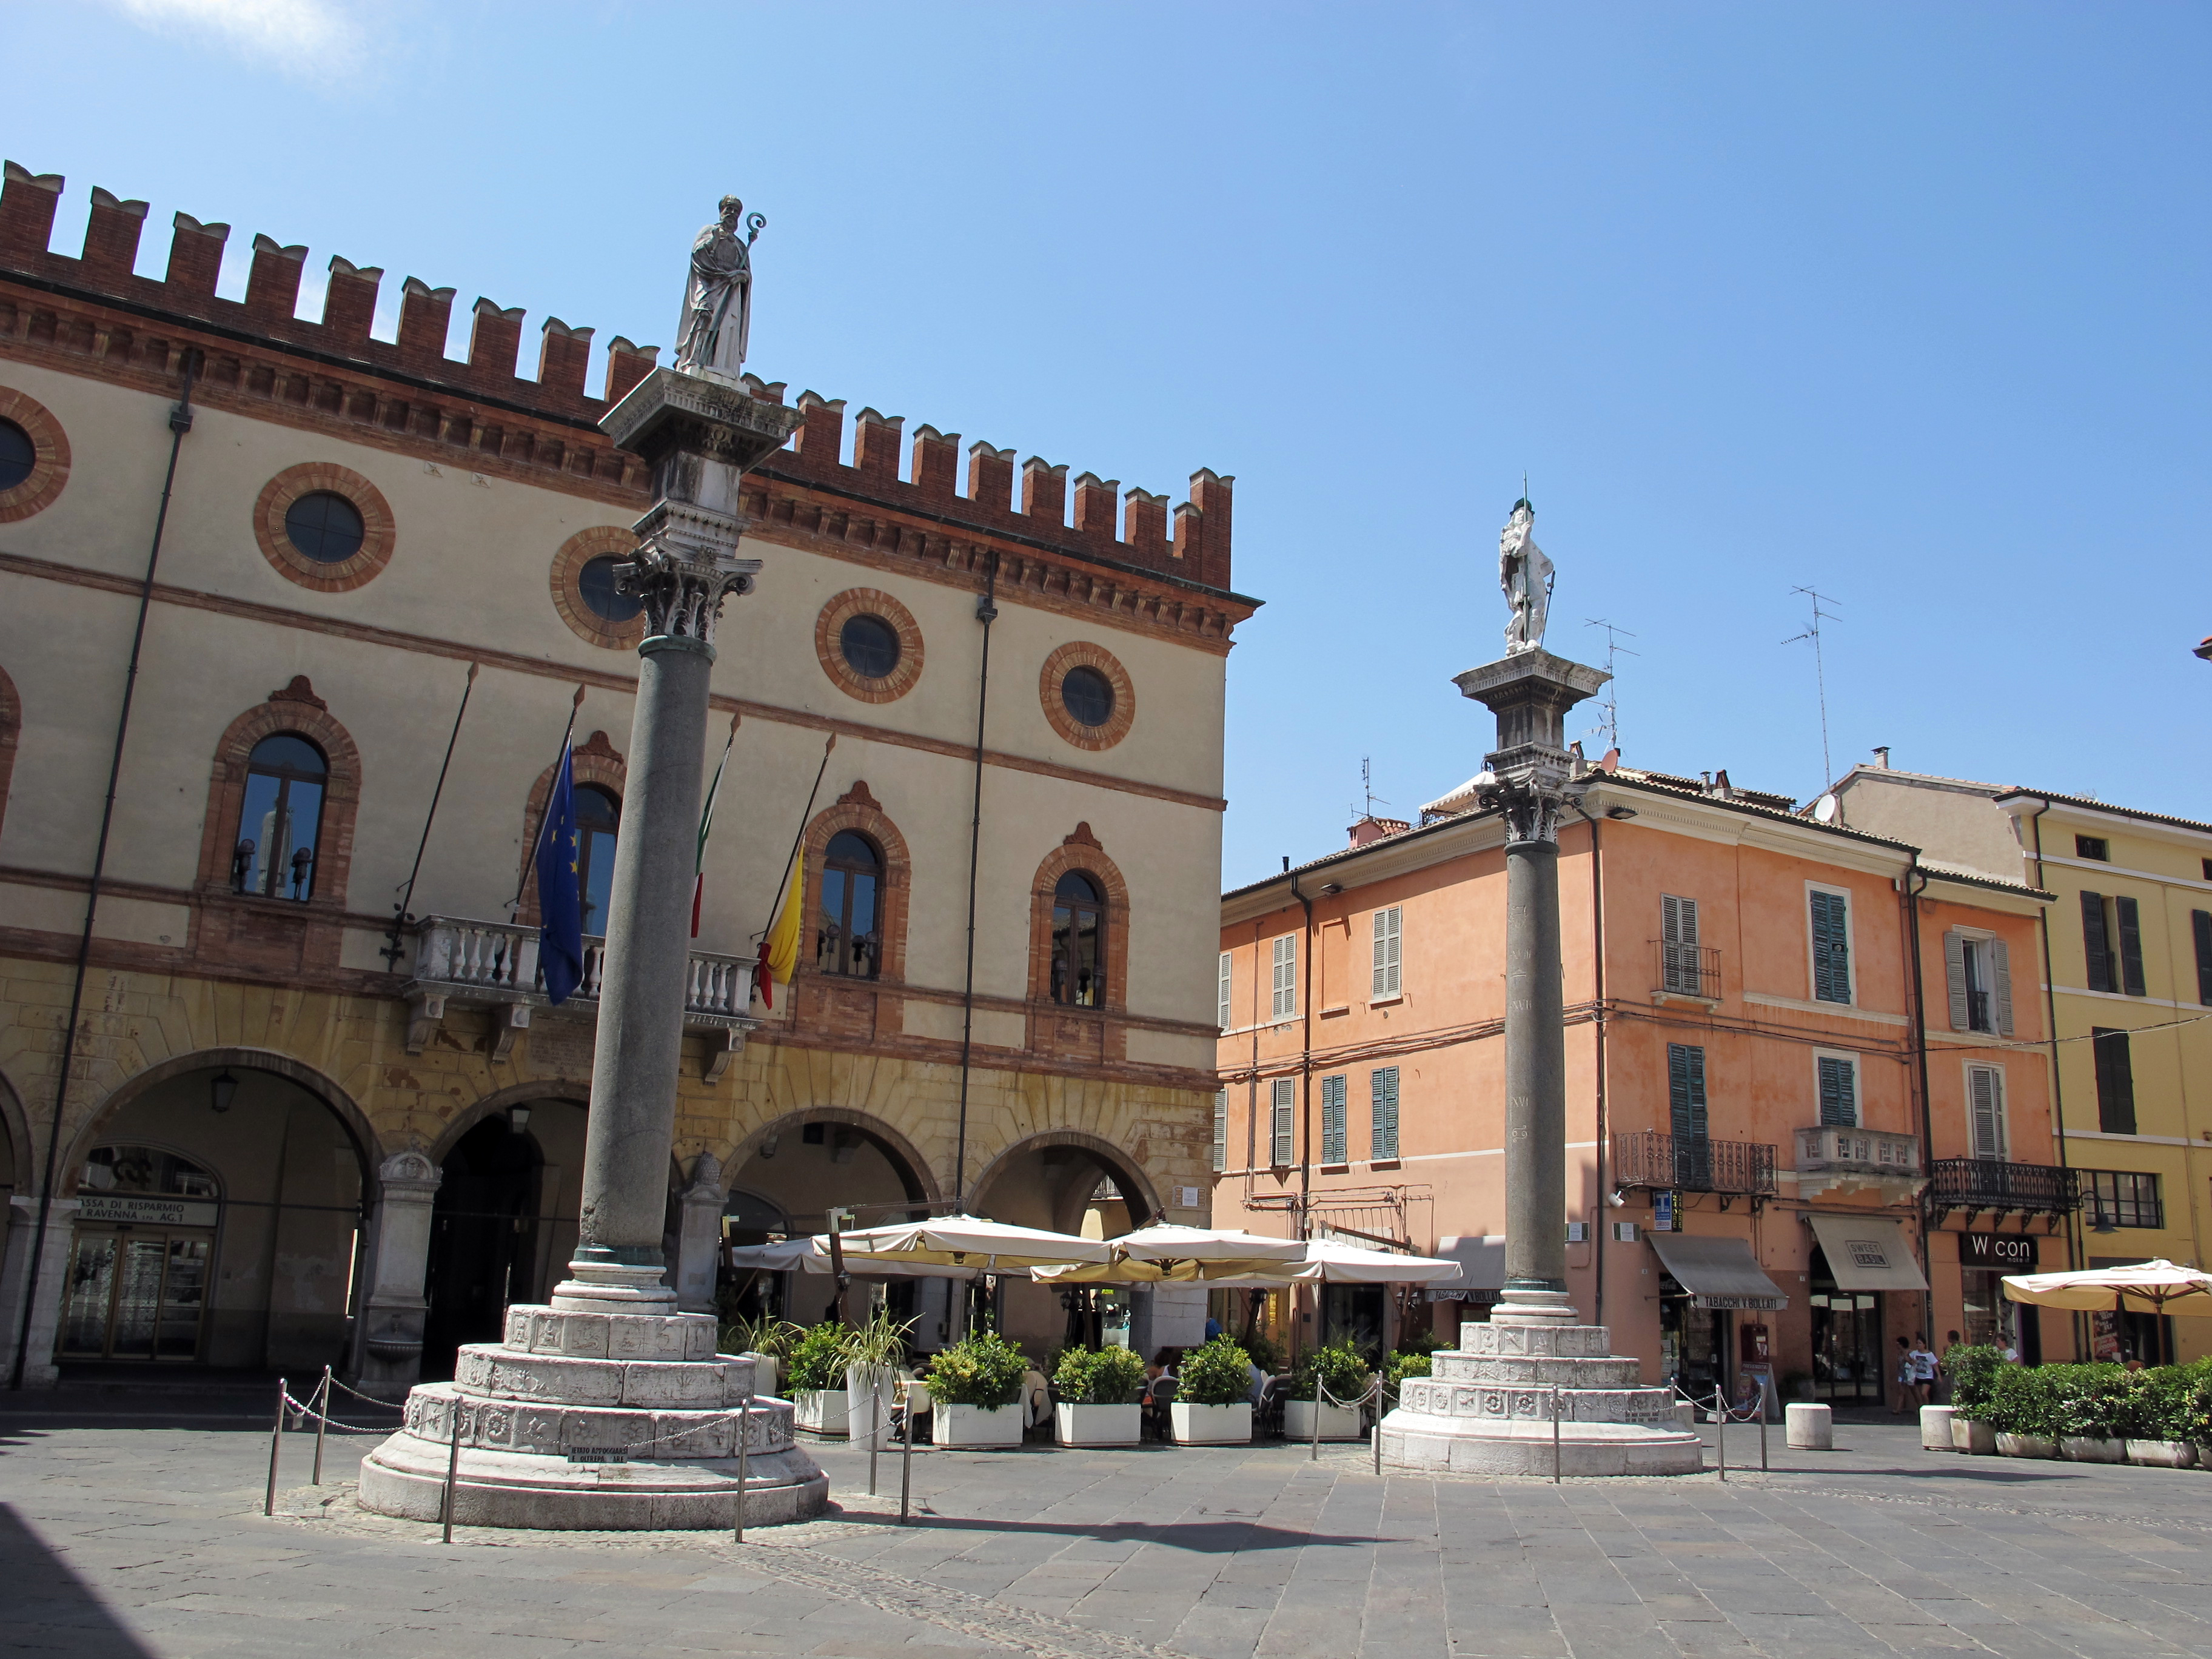 foto: https://upload.wikimedia.org/wikipedia/commons/7/70/Ravenna%2C_piazza_del_popolo%2C_colonne_di_pietro_lombardo%2C_1483%2C_00.JPG